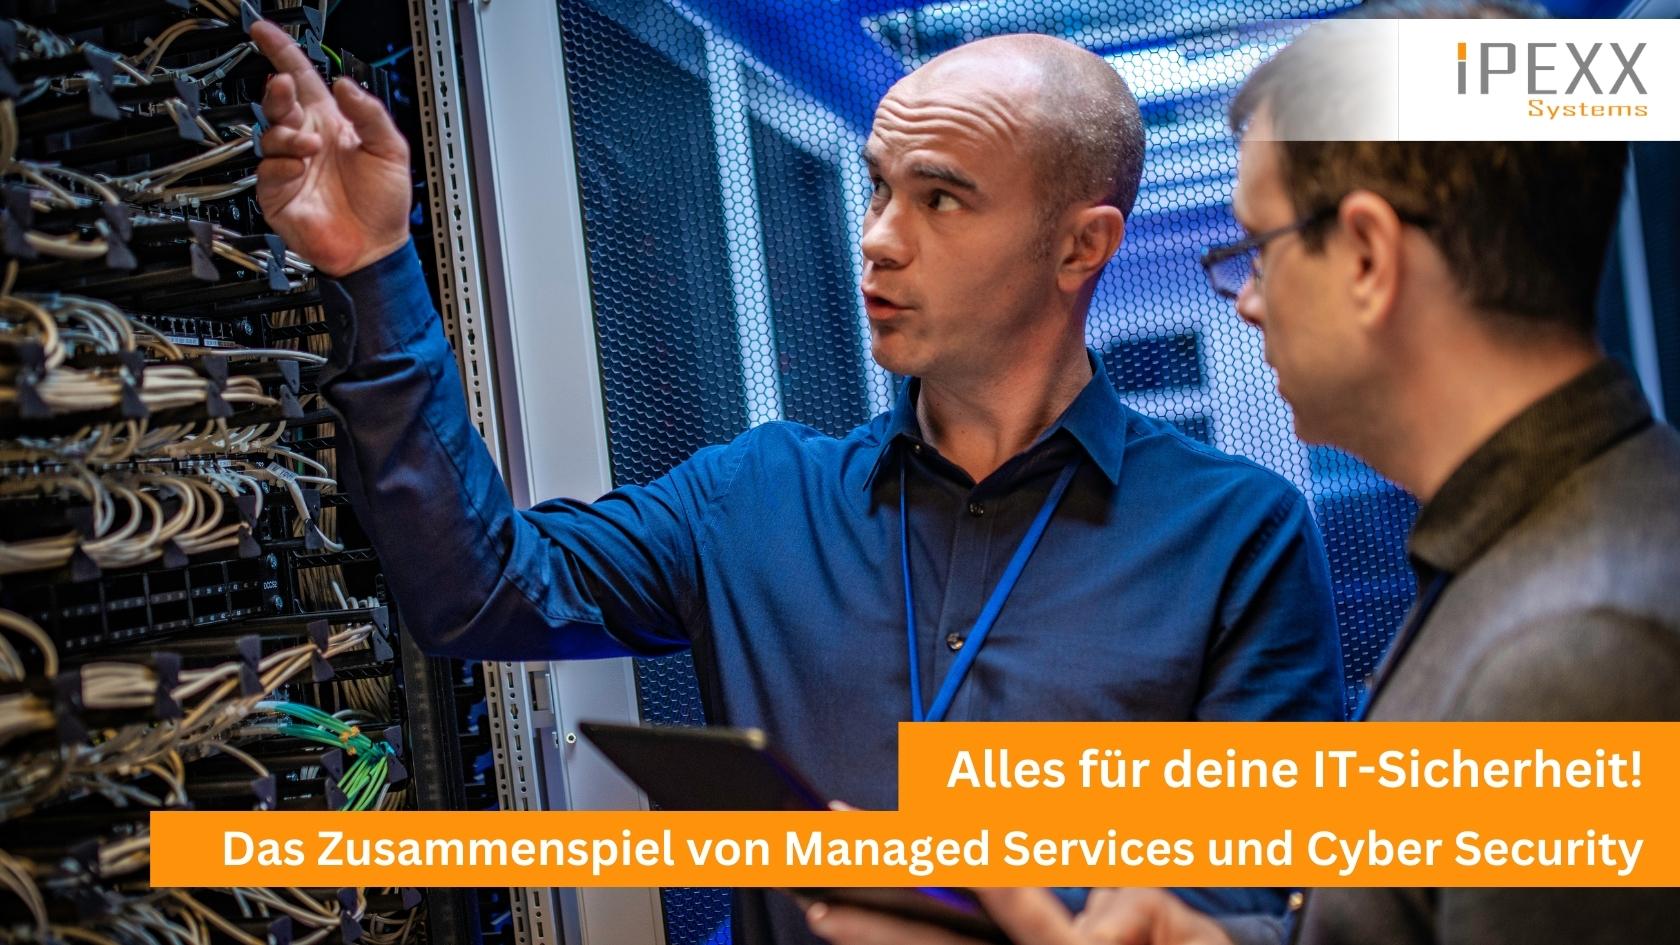 Cyber Security und Managed Services von IPEXX-Systems aus Wörnitz